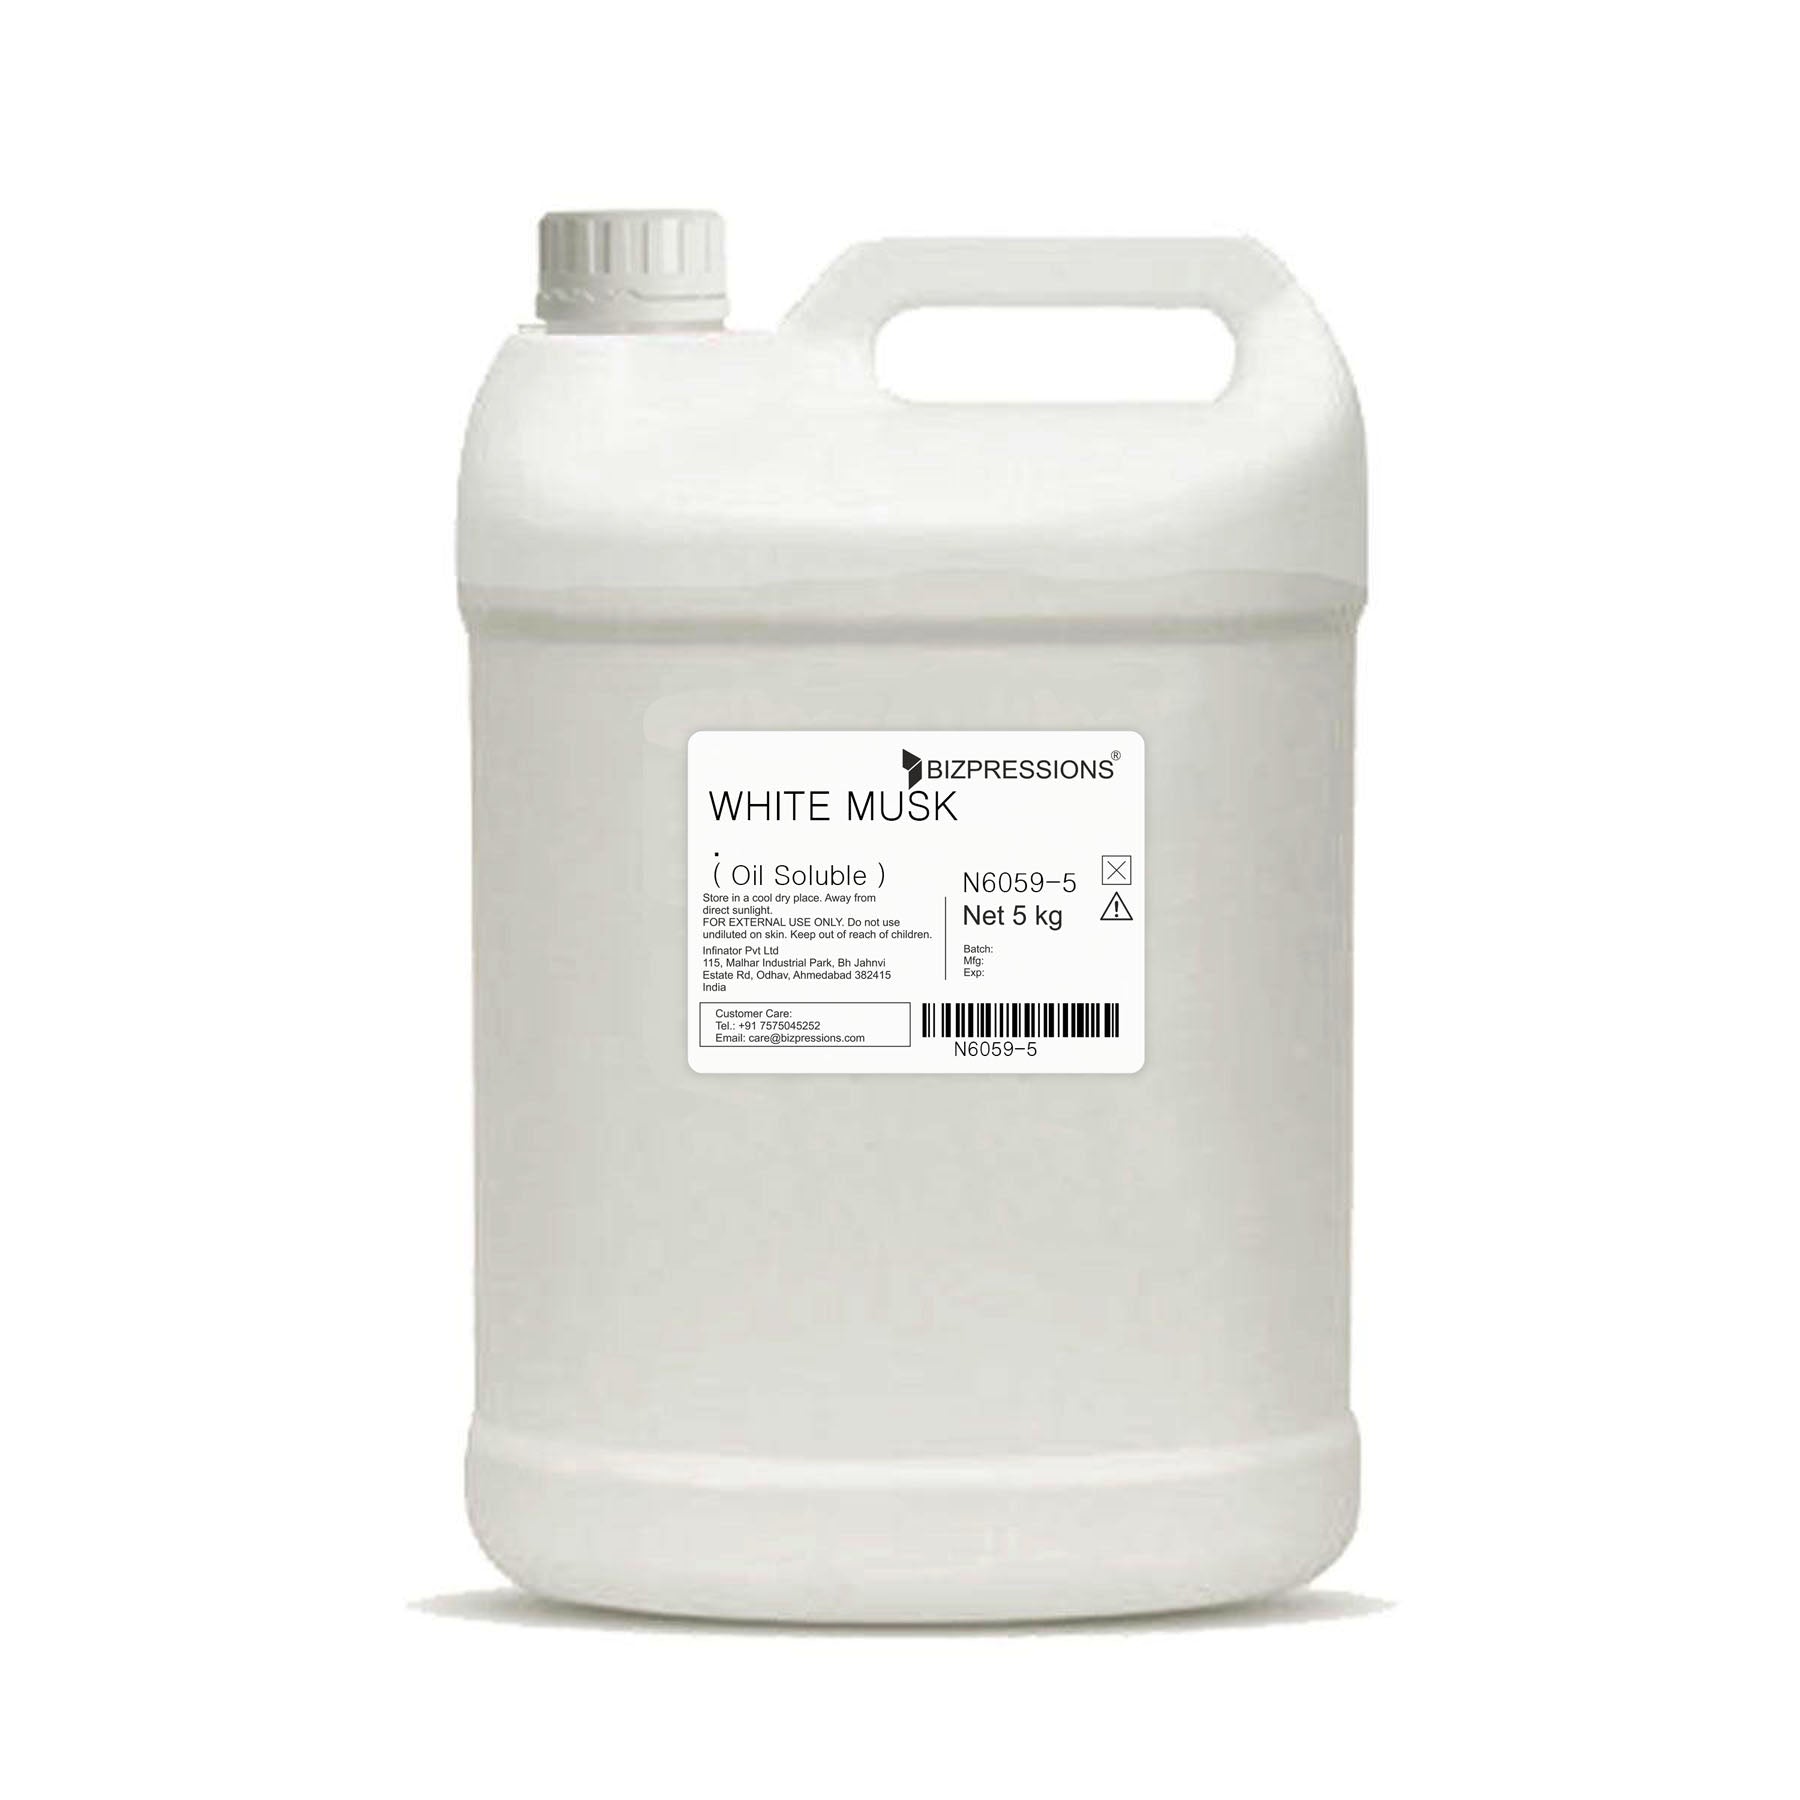 WHITE MUSK - Fragrance ( Oil Soluble ) - 5 kg